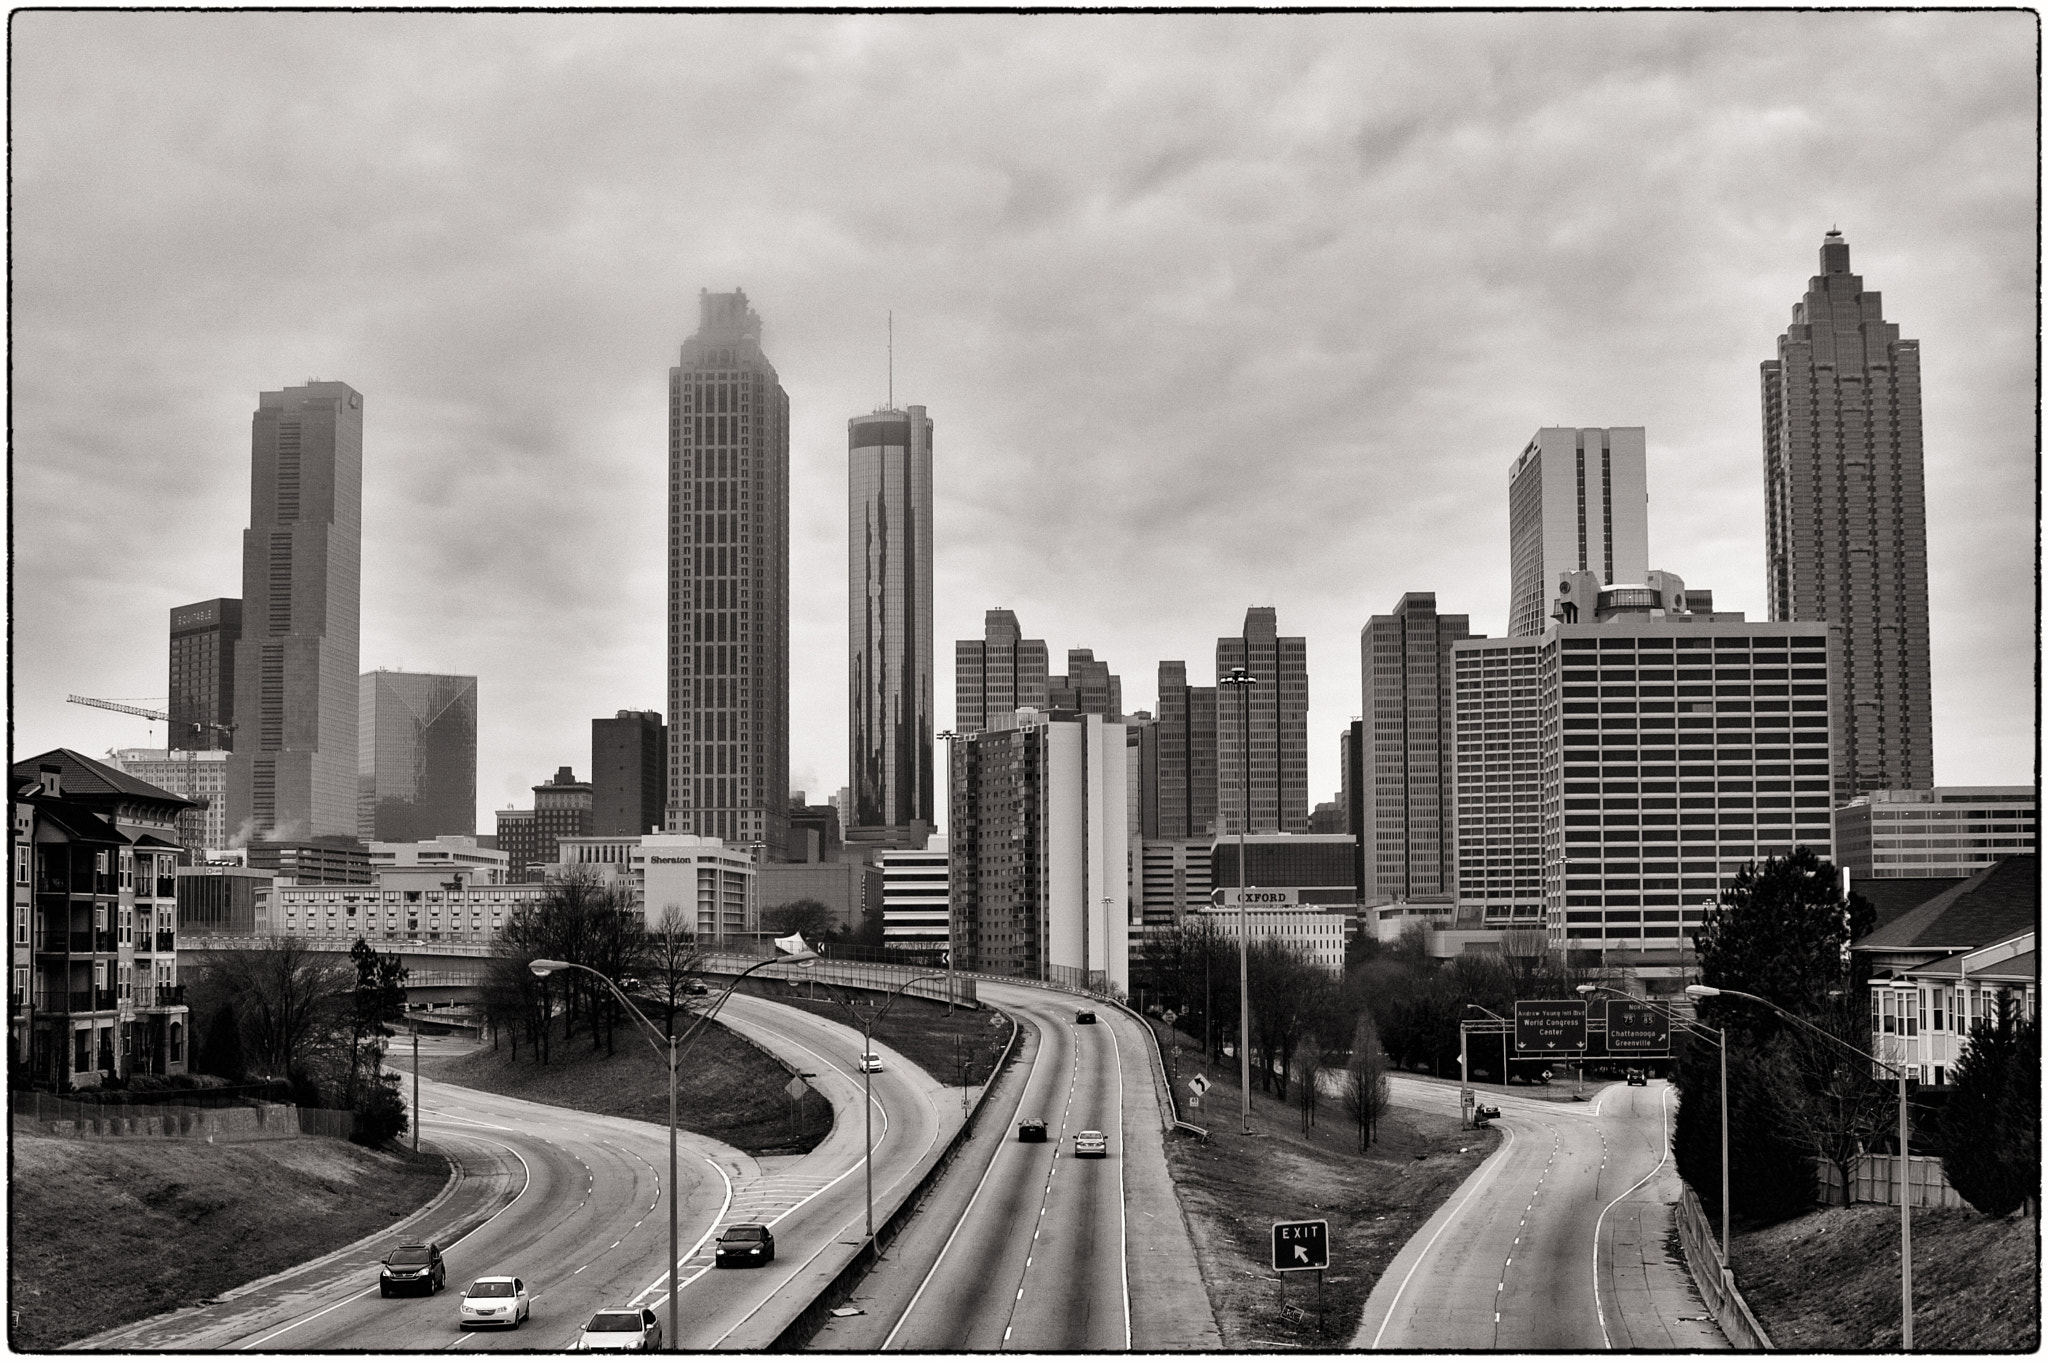 Nikon D70 + AF Zoom-Nikkor 35-80mm f/4-5.6D N sample photo. Atlanta skyline photography